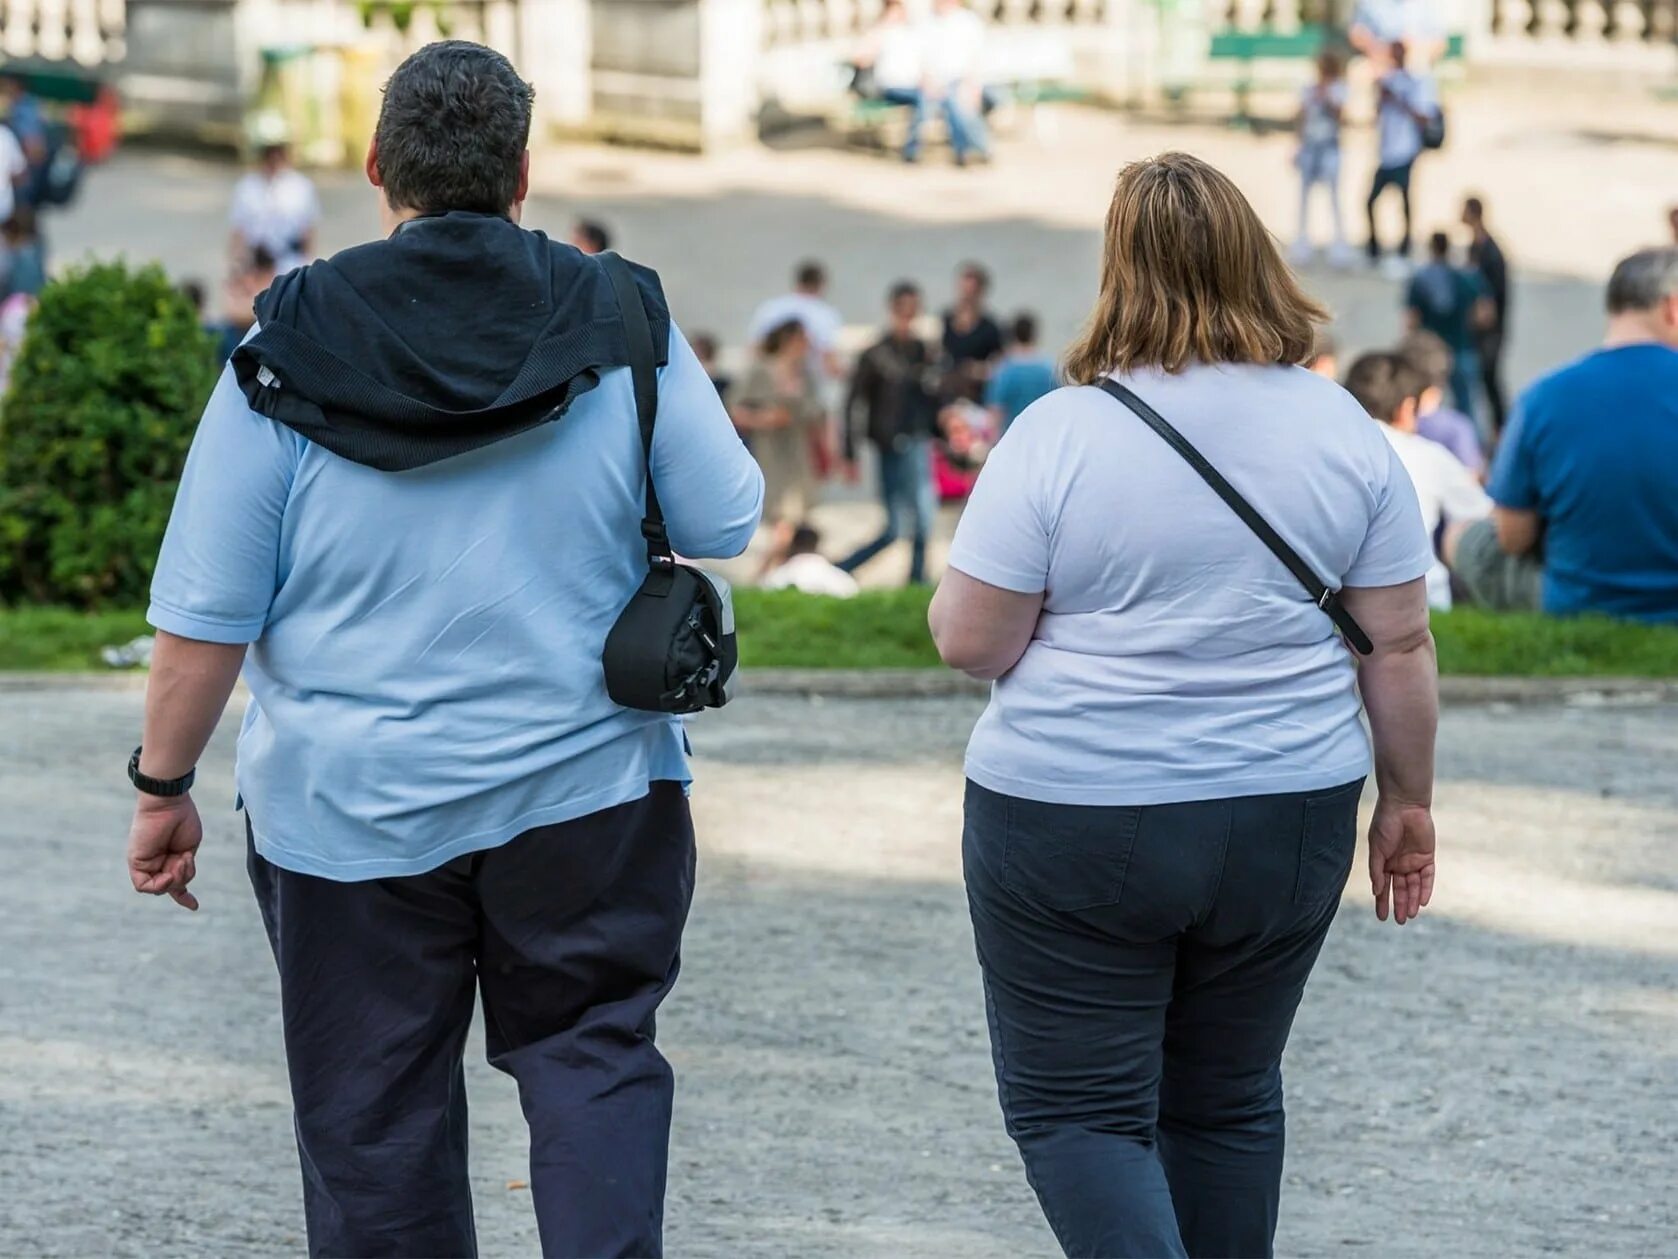 Ожирение эпидемия 21 века. Люди с избыточным весом.